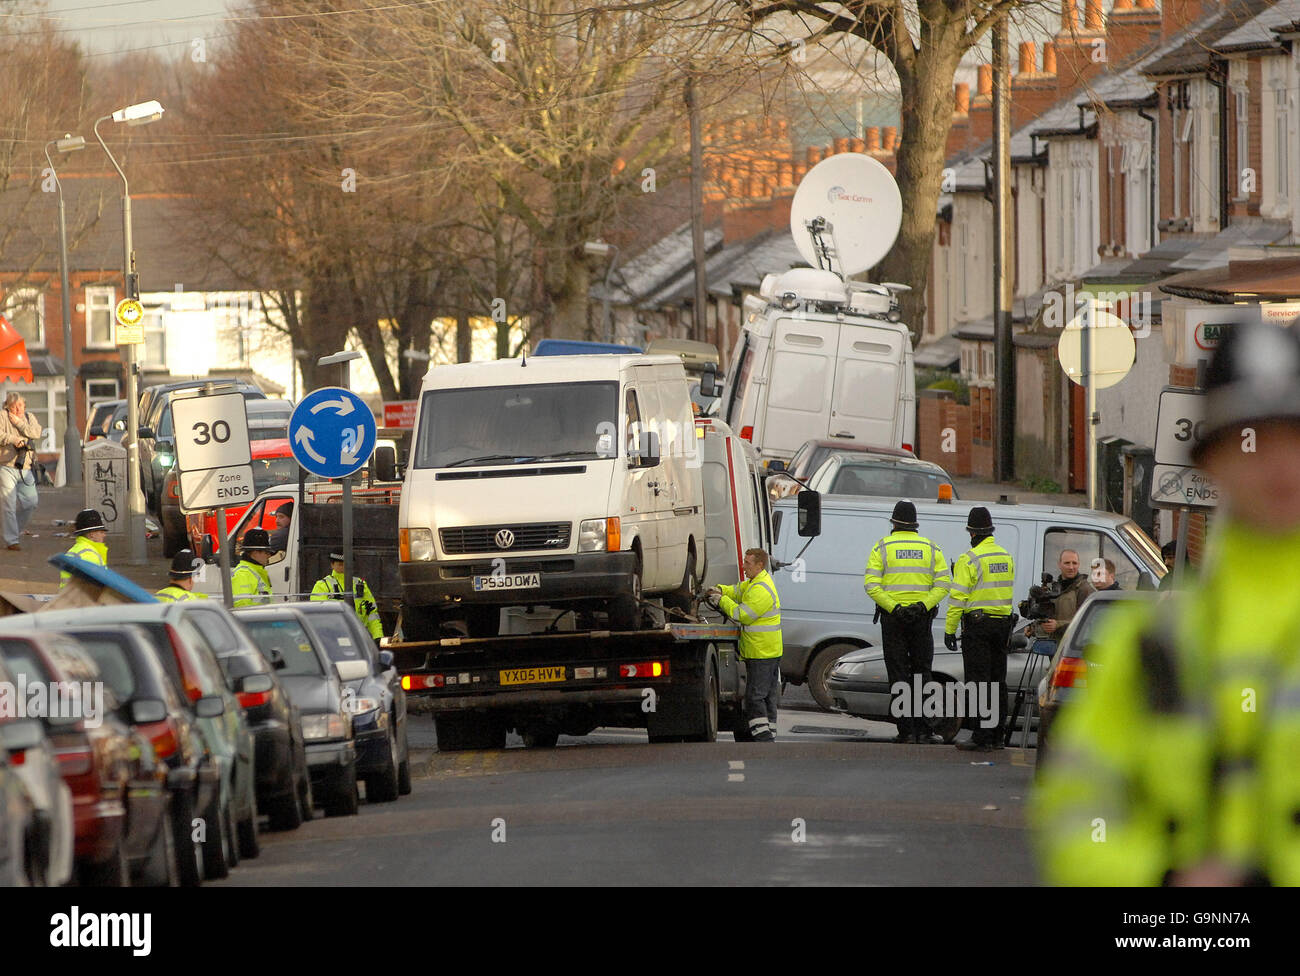 Une camionnette de télévision par satellite a été garée tout en couvrant les raids anti-terreur dans la zone d'Alum Rock à Birmingham. Date de la photo: Mercredi 31 janvier 2007. Banque D'Images